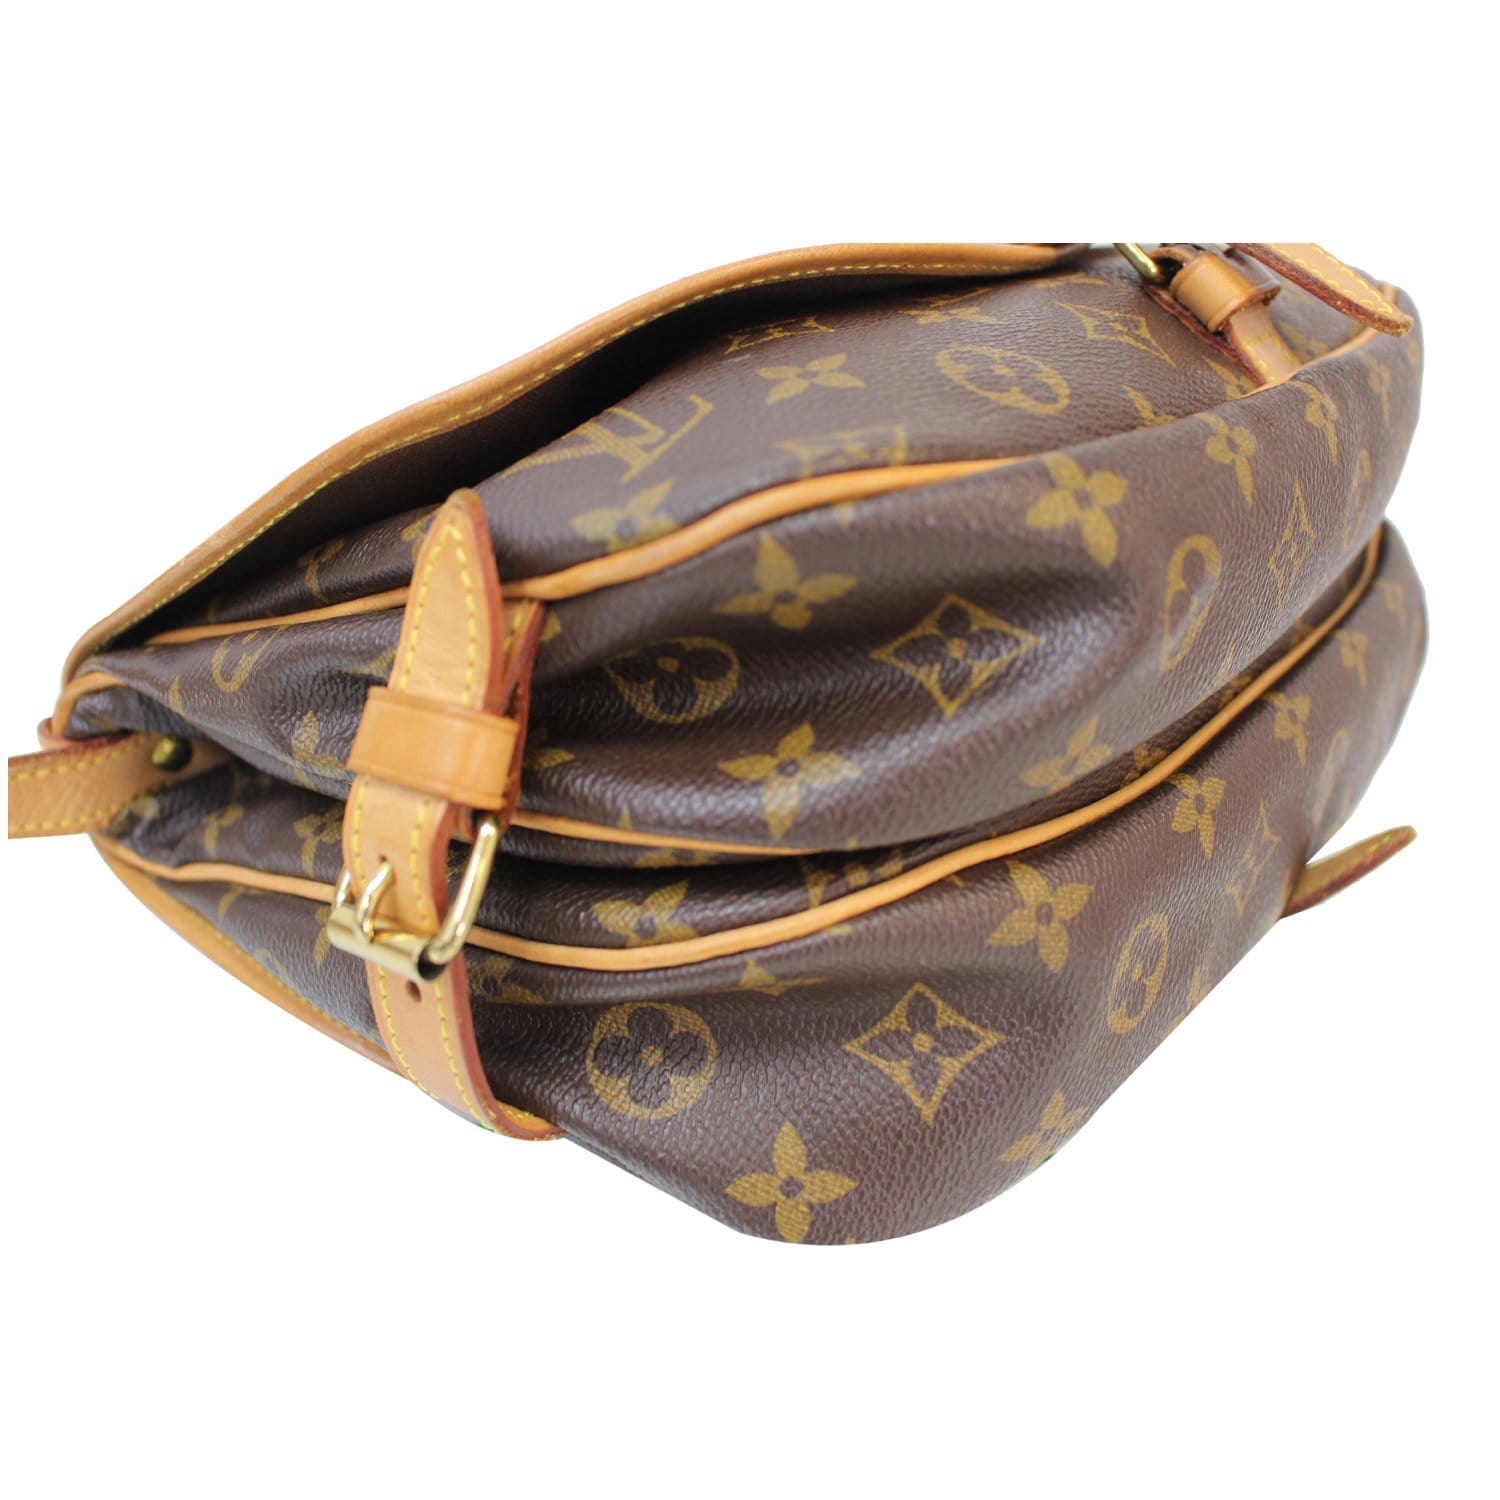 Bag > Louis Vuitton Saumur Slingbag